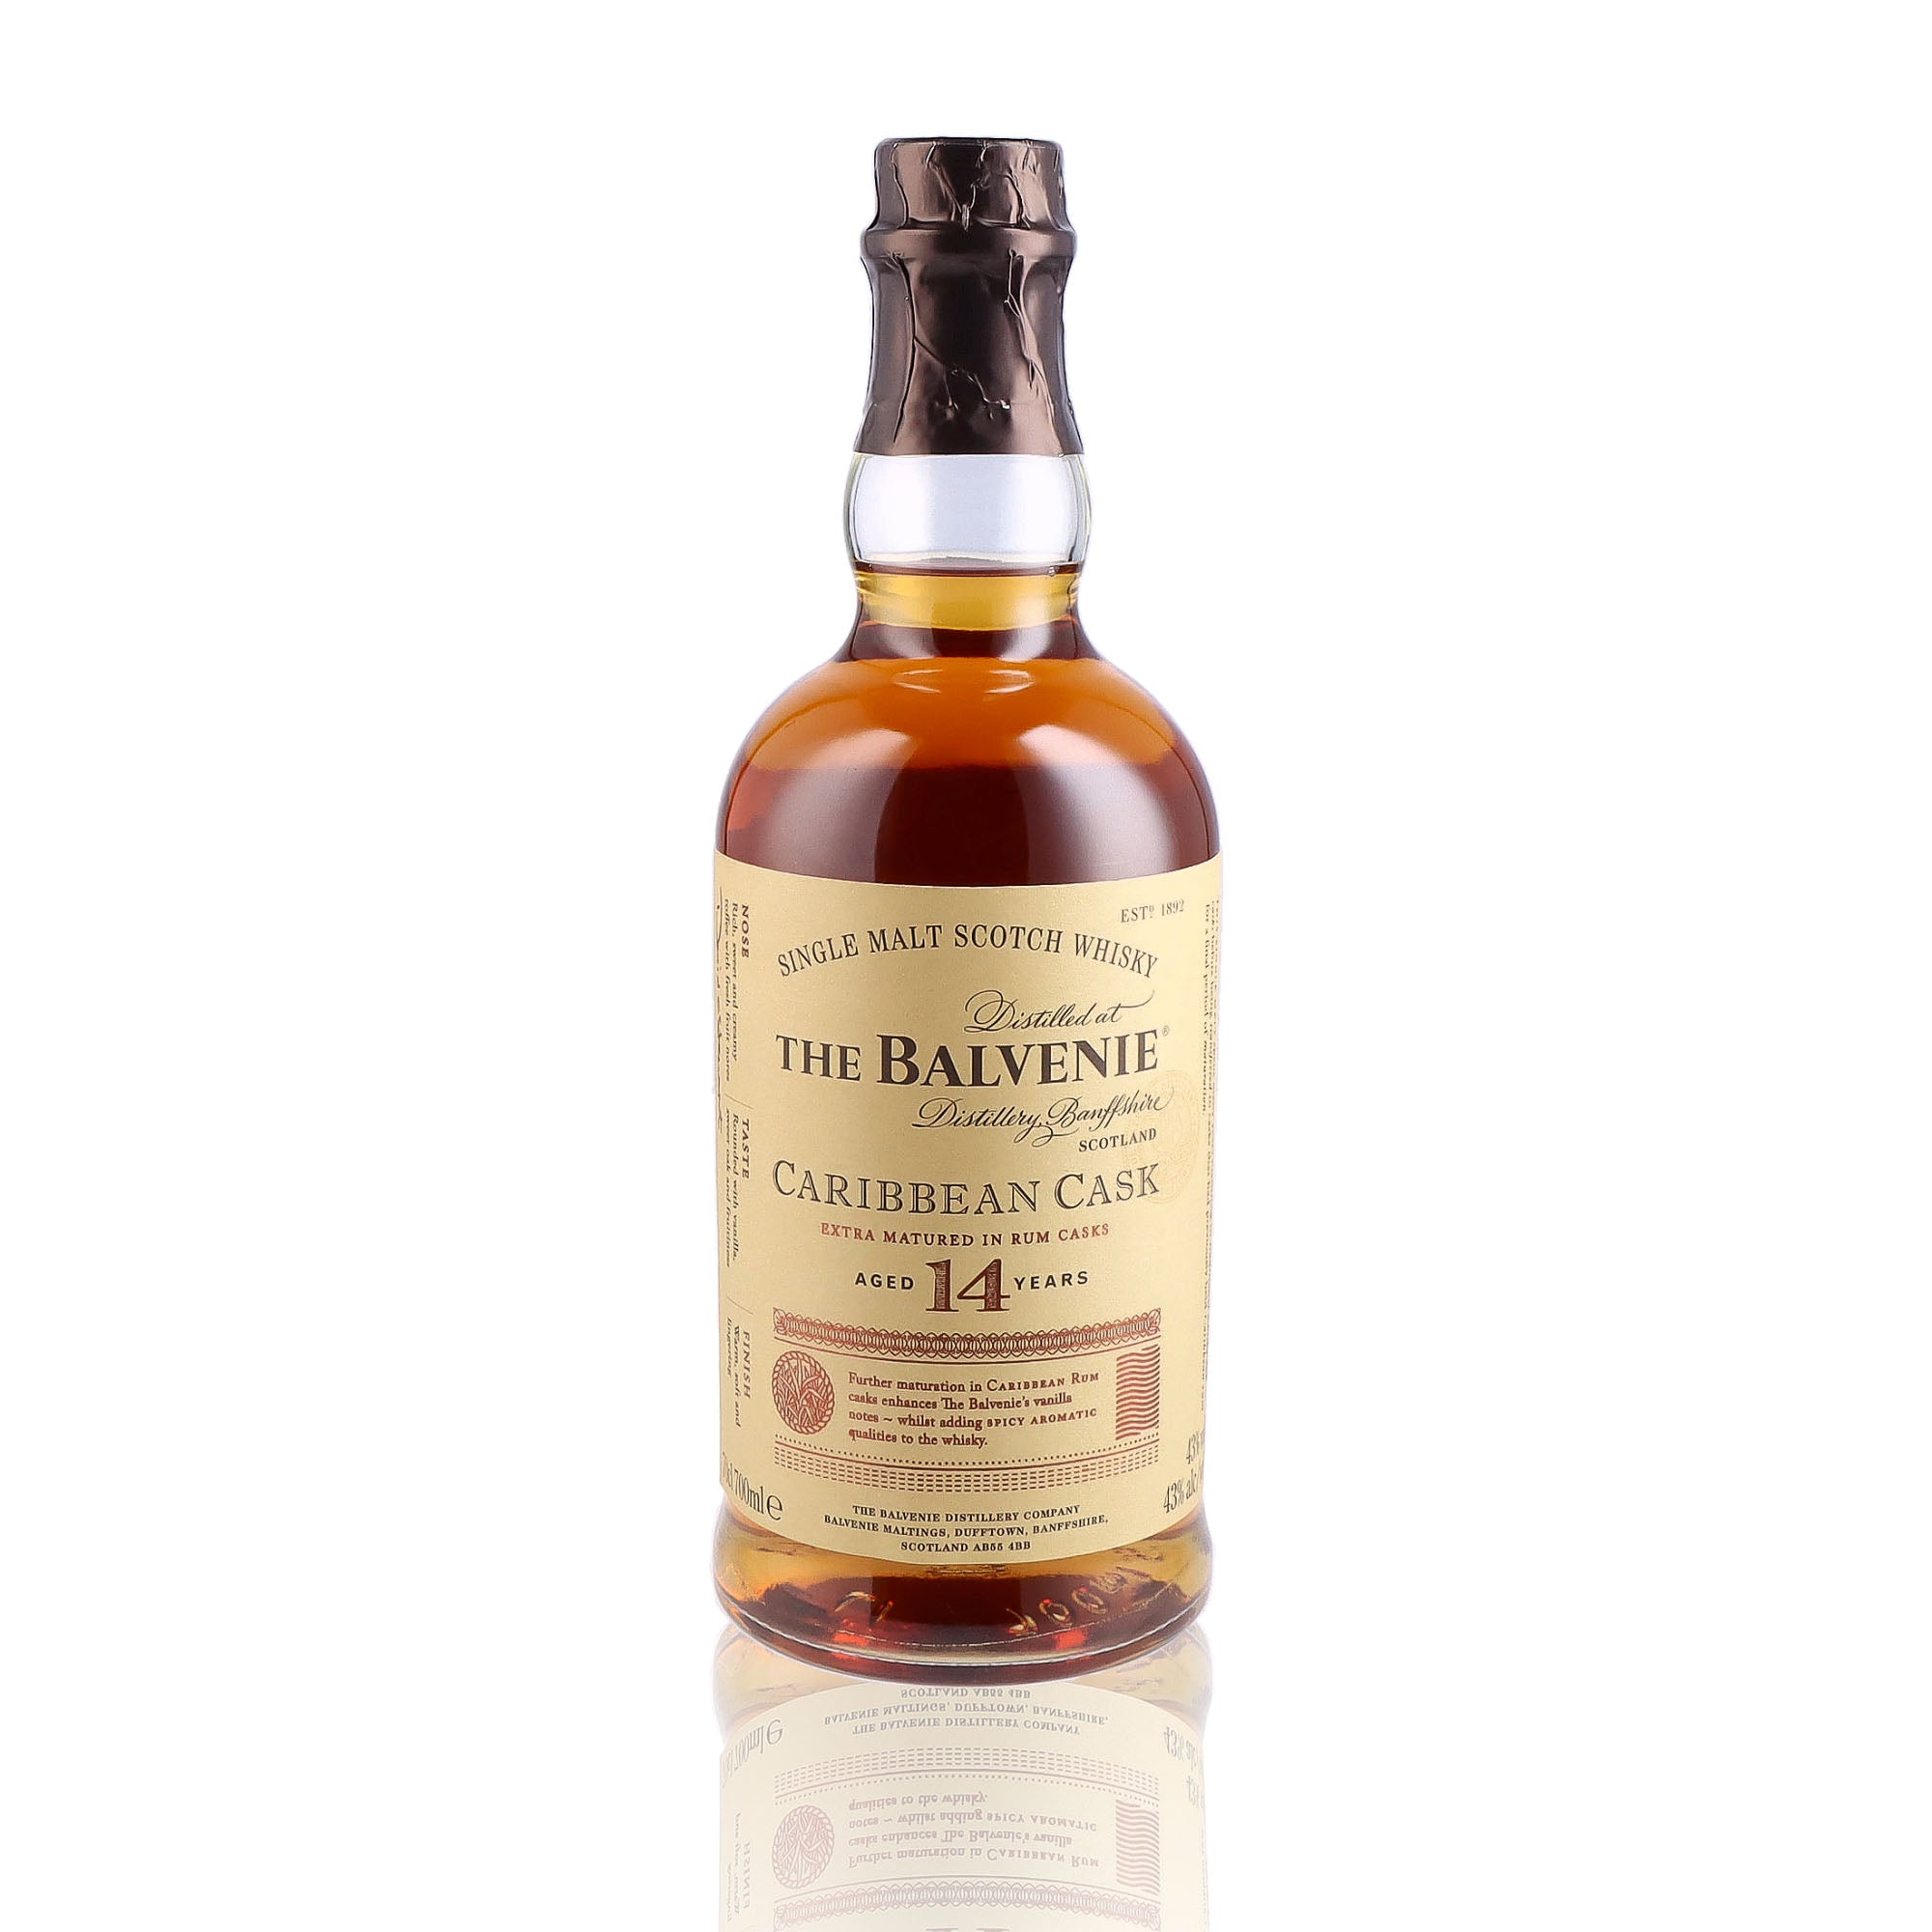 Un coffret de Scotch Whisky Single Malt de la marque Balvenie, nommée Coffret Caribbean Cask et 2 verres, 14 ans d'âge. 